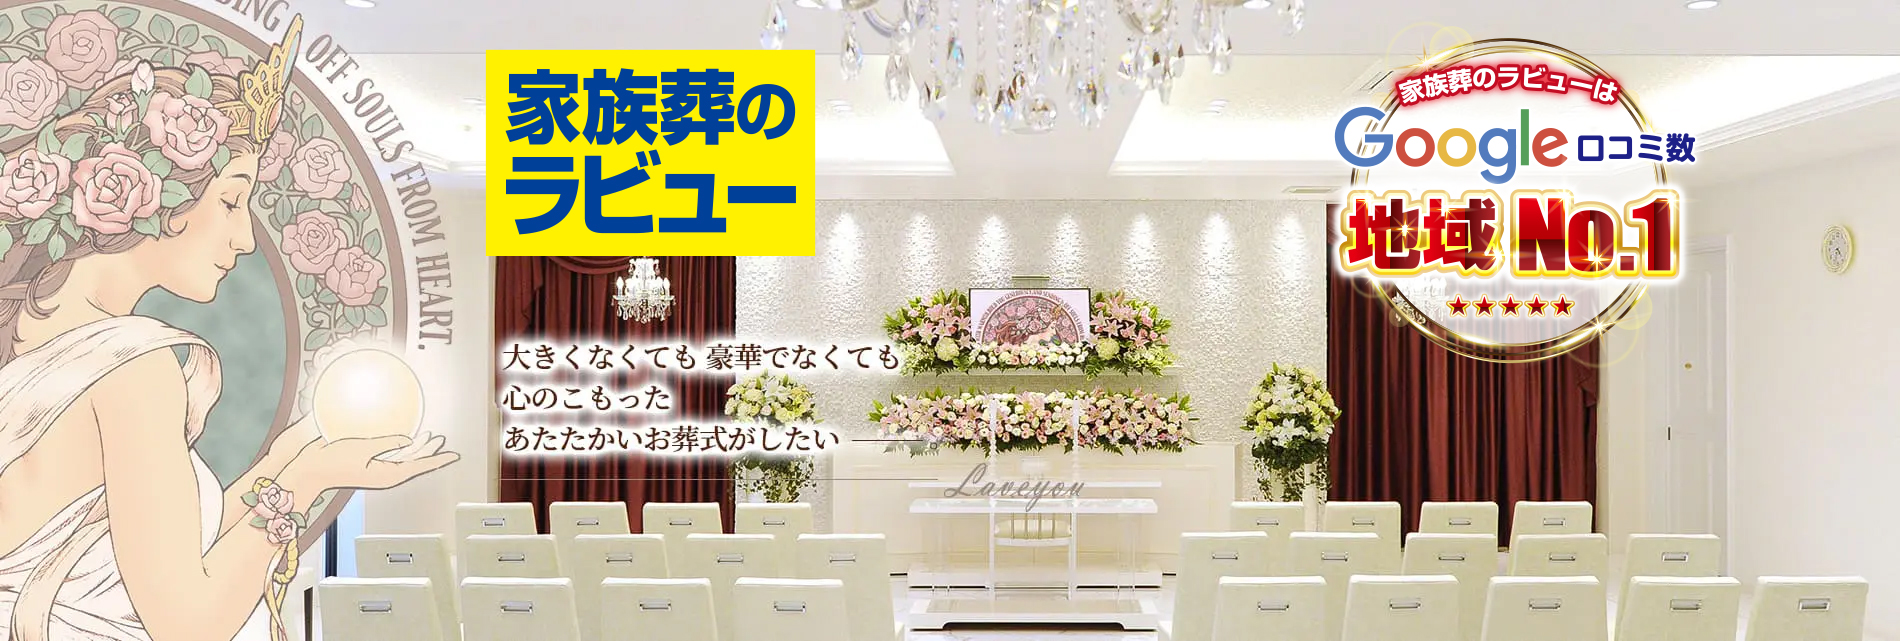 静岡県で葬儀・葬式なら家族葬のラビュー。世界に一つだけのお別れのときを手作り致します